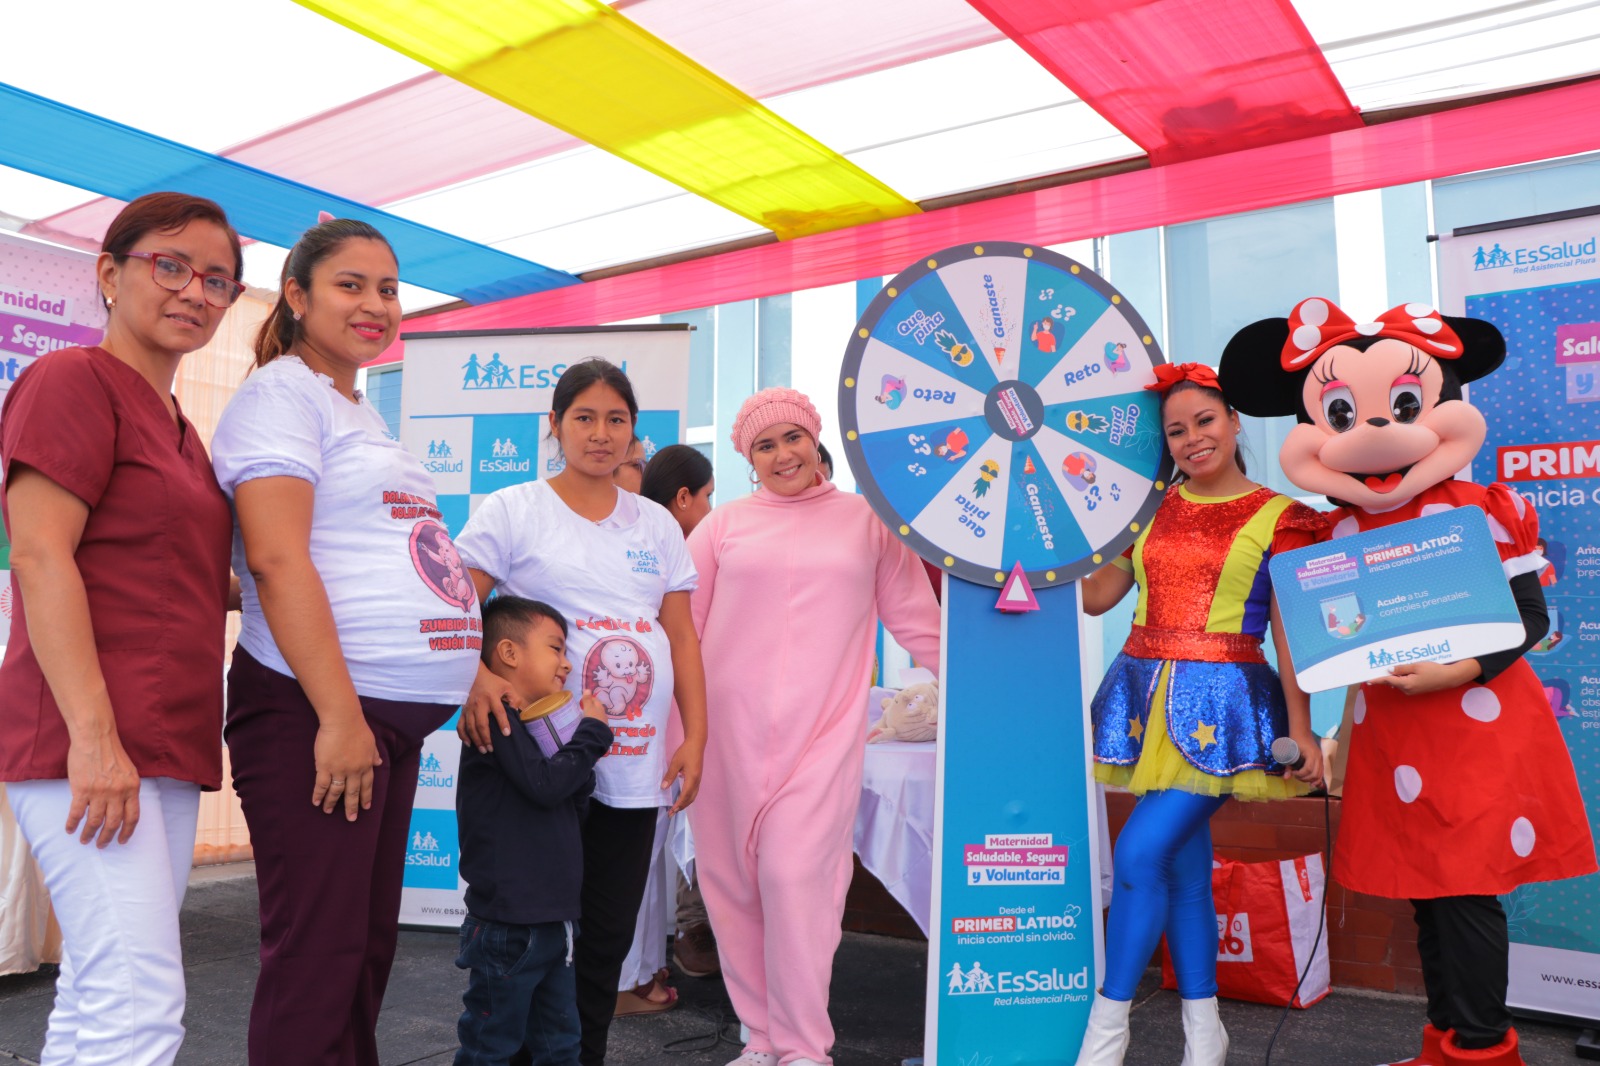 Essalud - EsSalud Piura promueve la Semana de la Maternidad Saludable, Segura y Voluntaria con diversas actividades